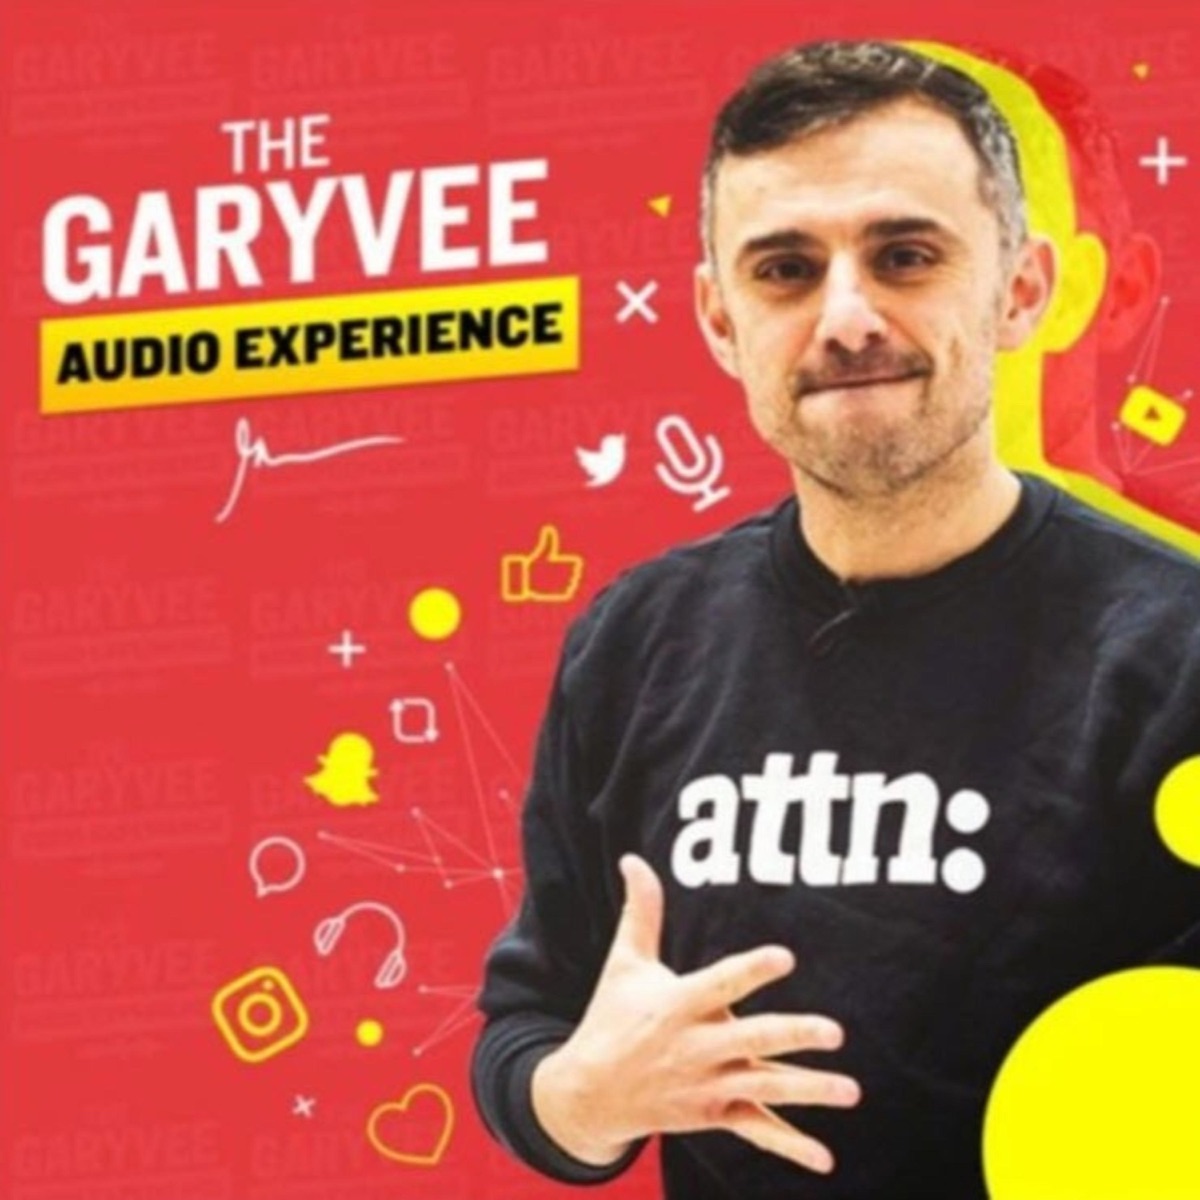 The GaryVee Audio Experience